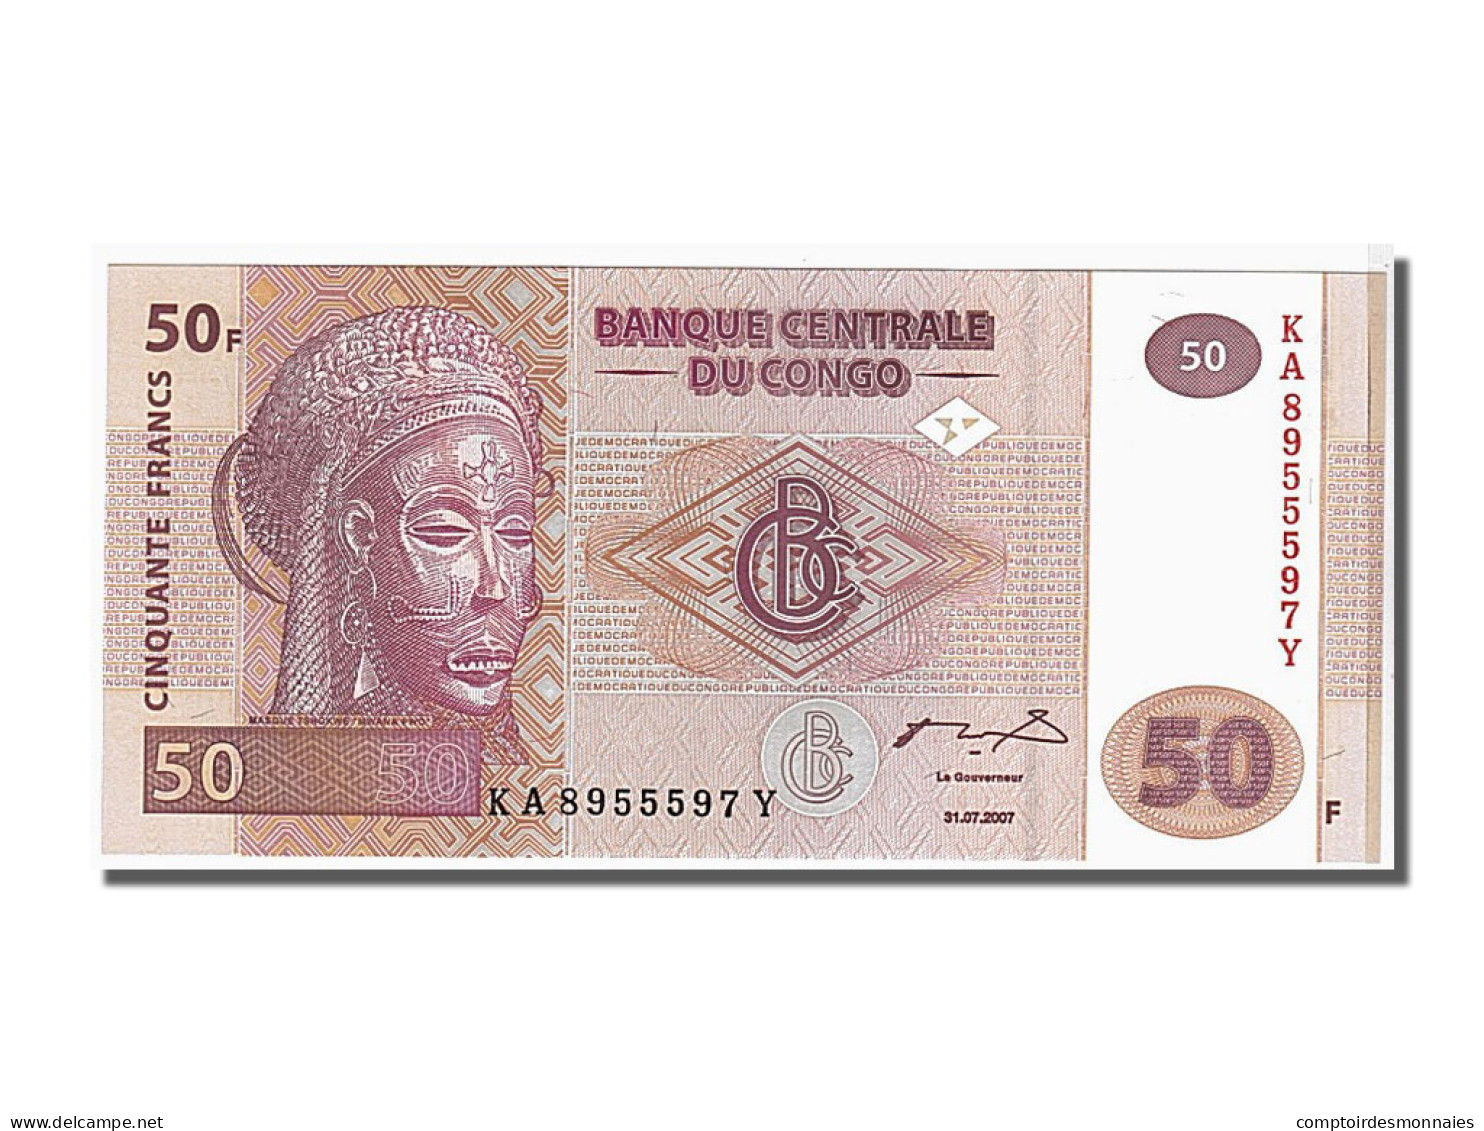 Billet, Congo Democratic Republic, 50 Francs, 2007, KM:97a, NEUF - Democratic Republic Of The Congo & Zaire